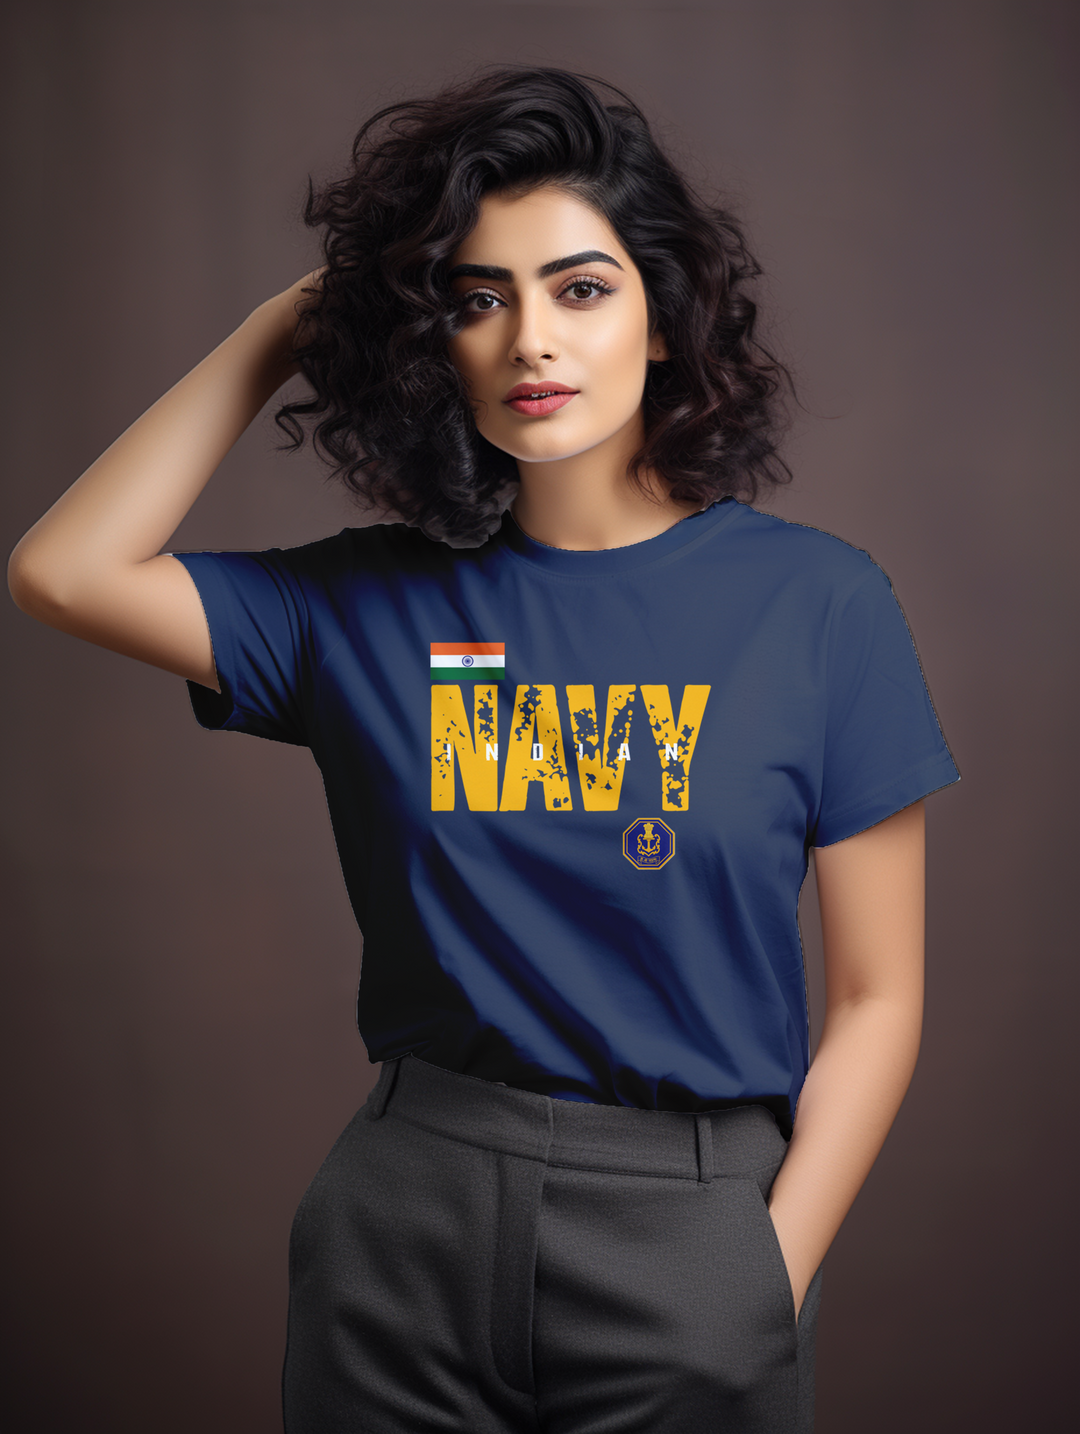 Women's Indian navy tee